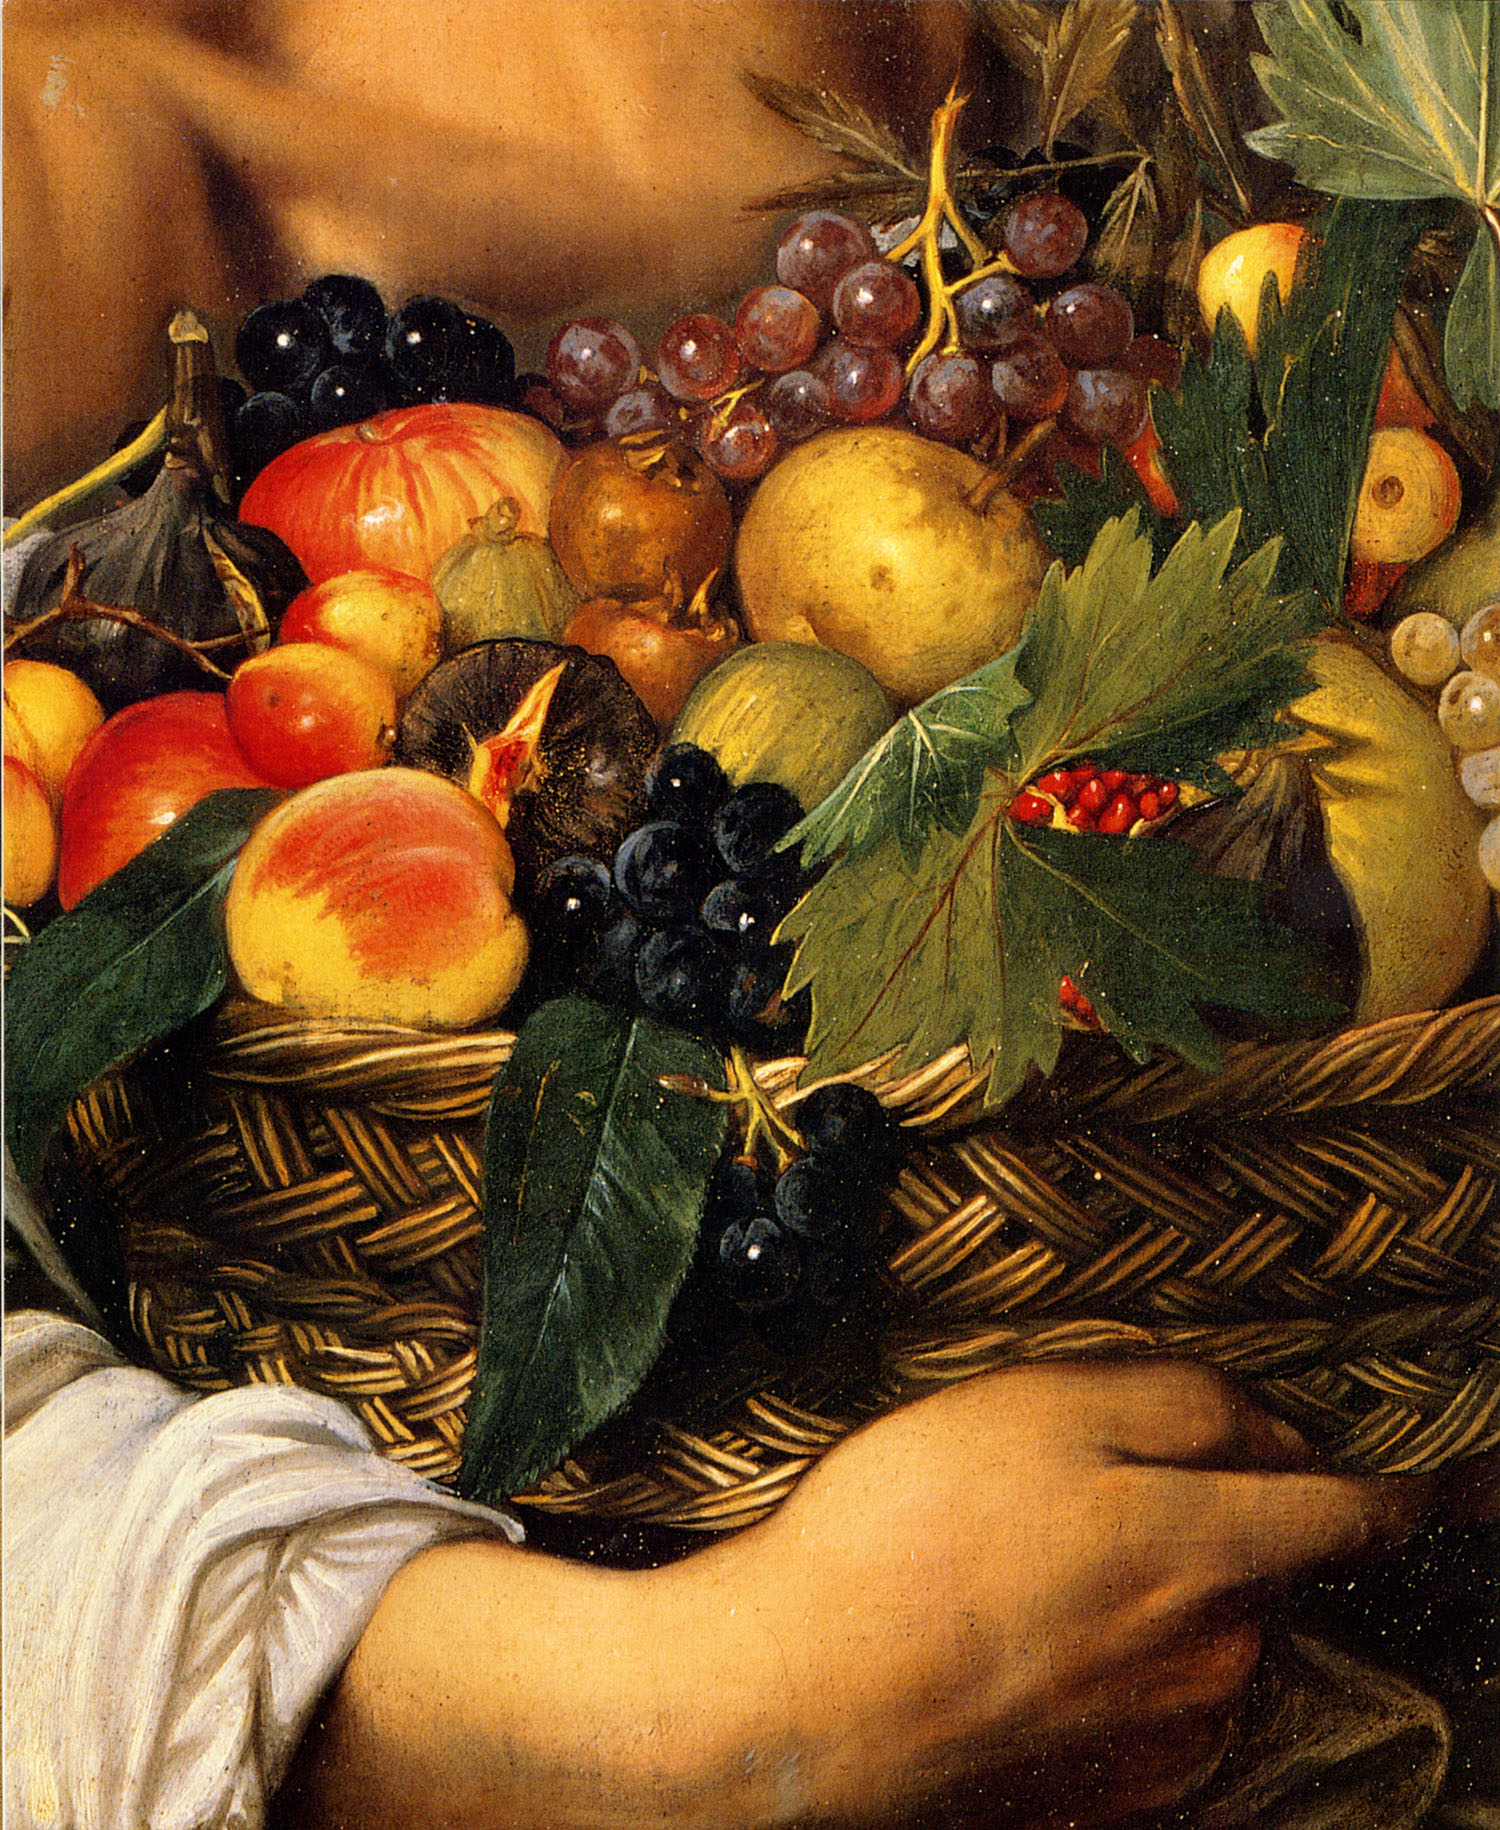 Караваджо. Юноша с корзиной фруктов. 1593. Фрагмент.